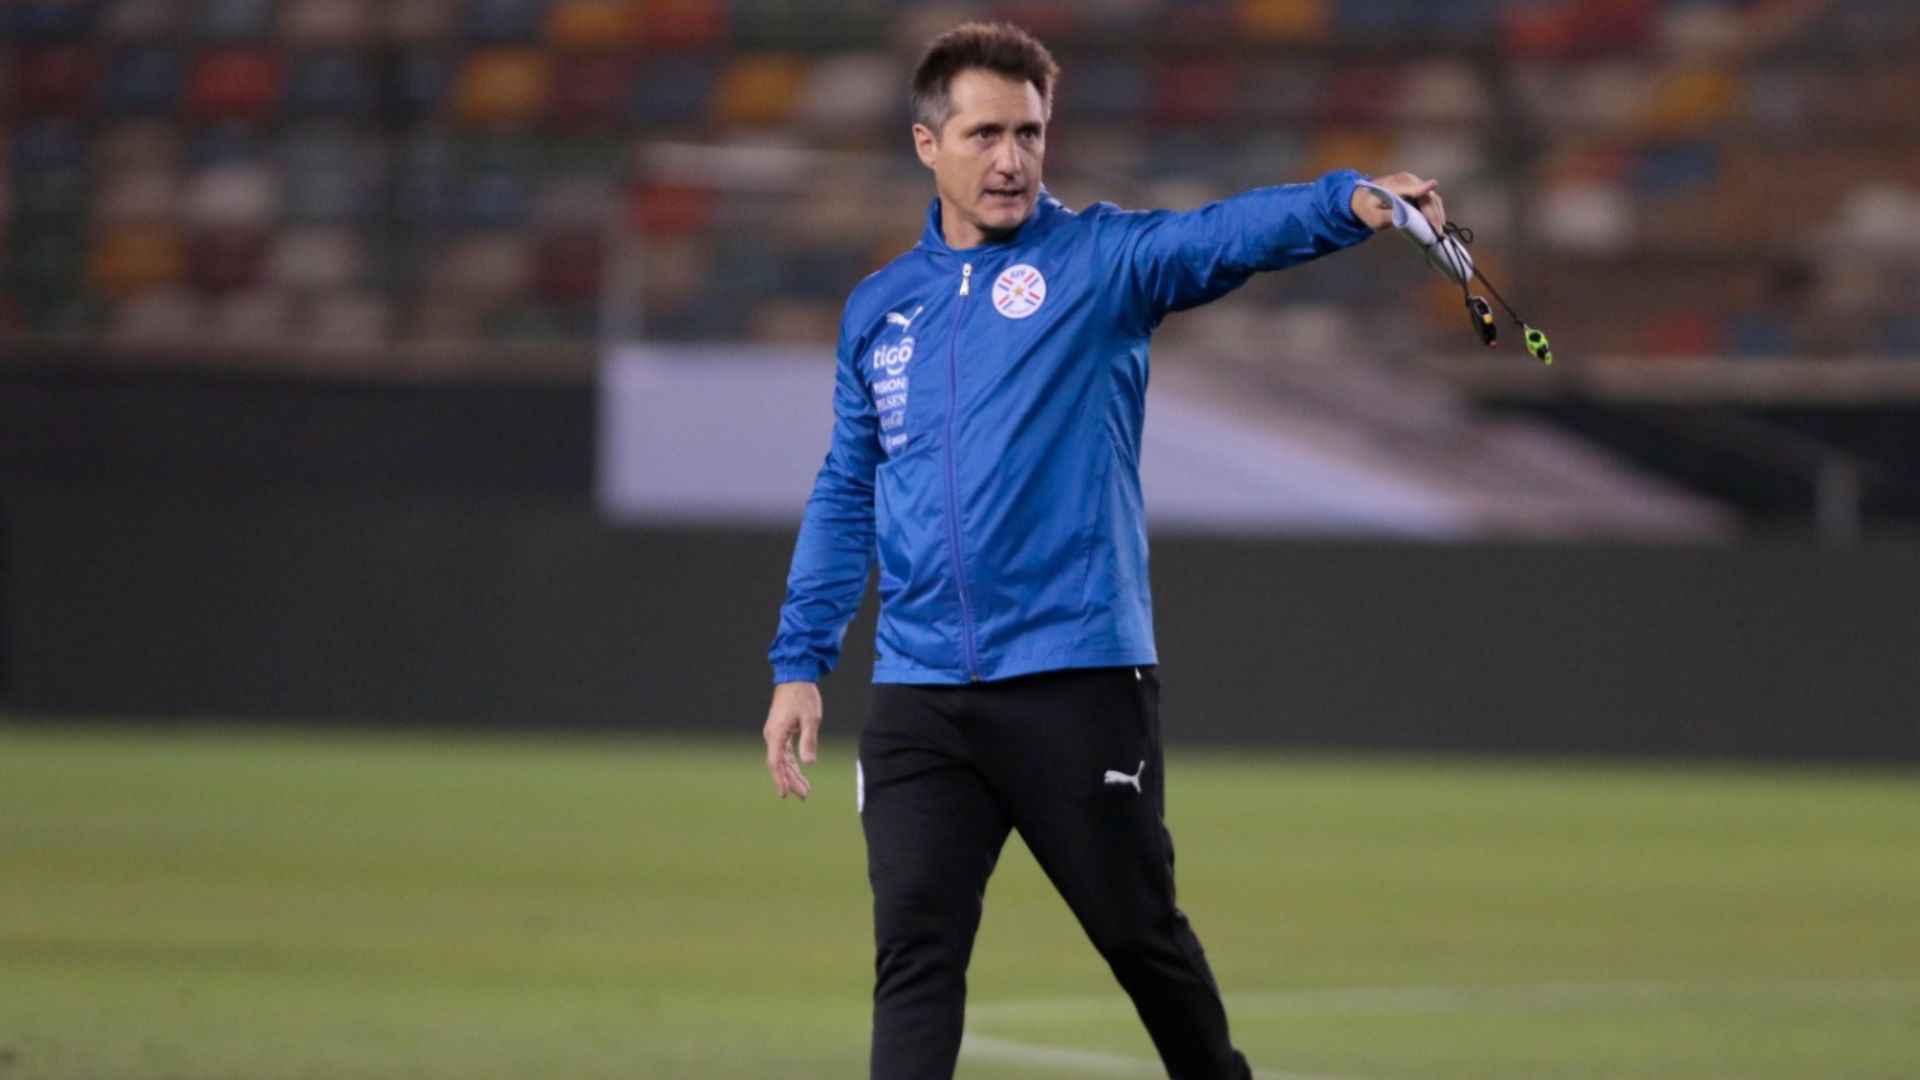 Técnico de Paraguay restó mérito a la selección peruana: “Aprovecharon solamente una pelota quieta”